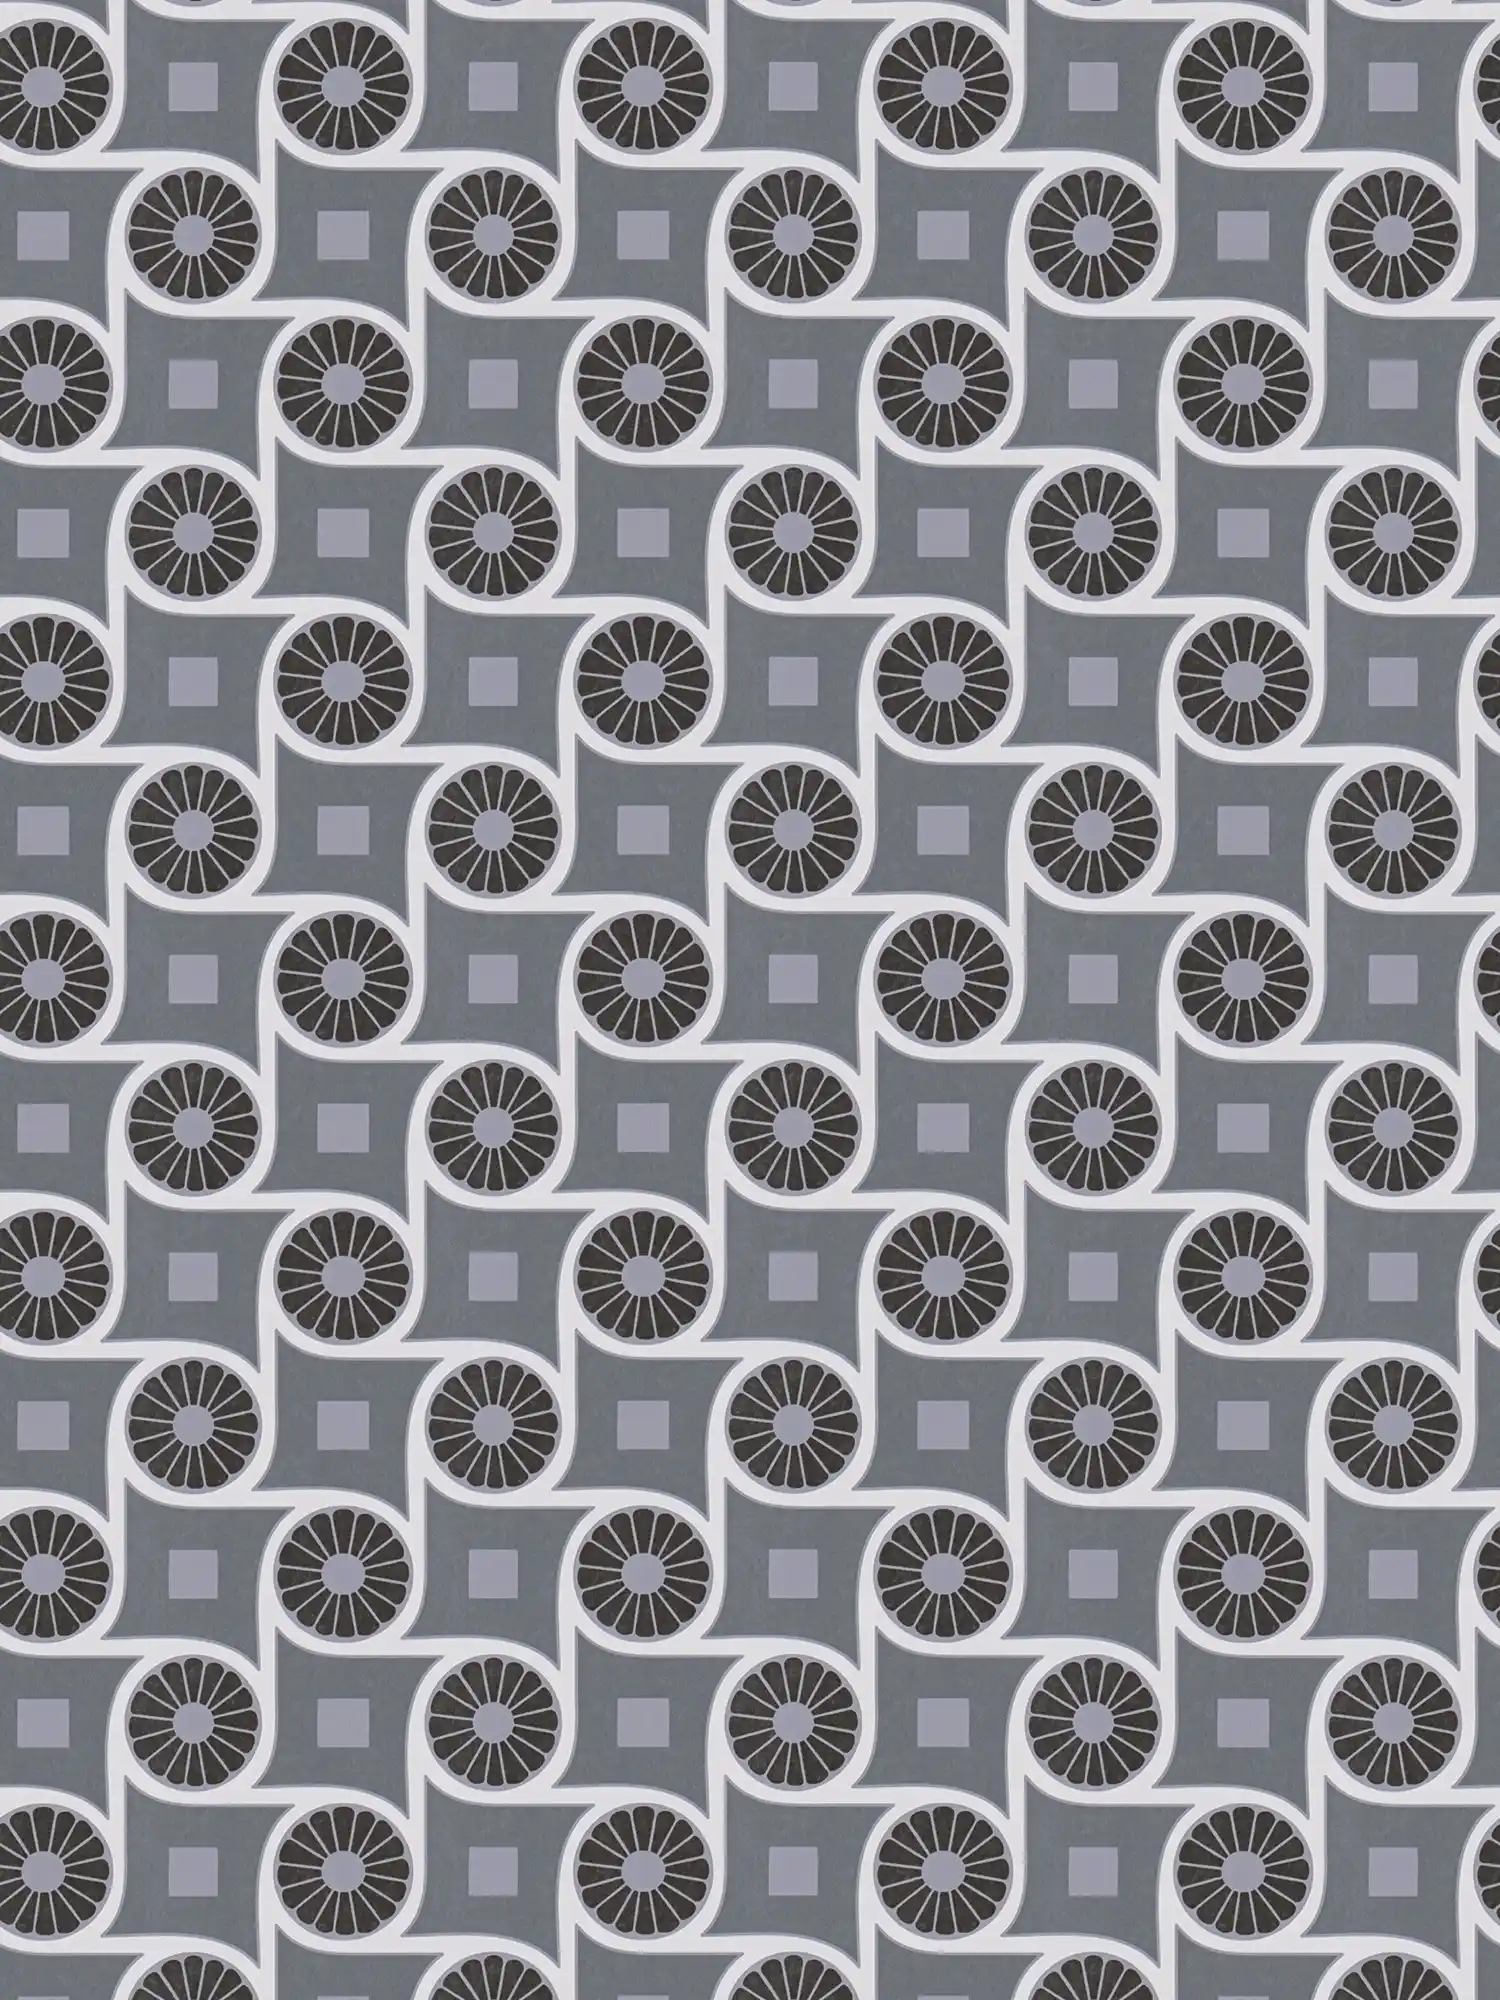 Papier peint style rétro avec motifs circulaires et carrés - gris, blanc, noir
